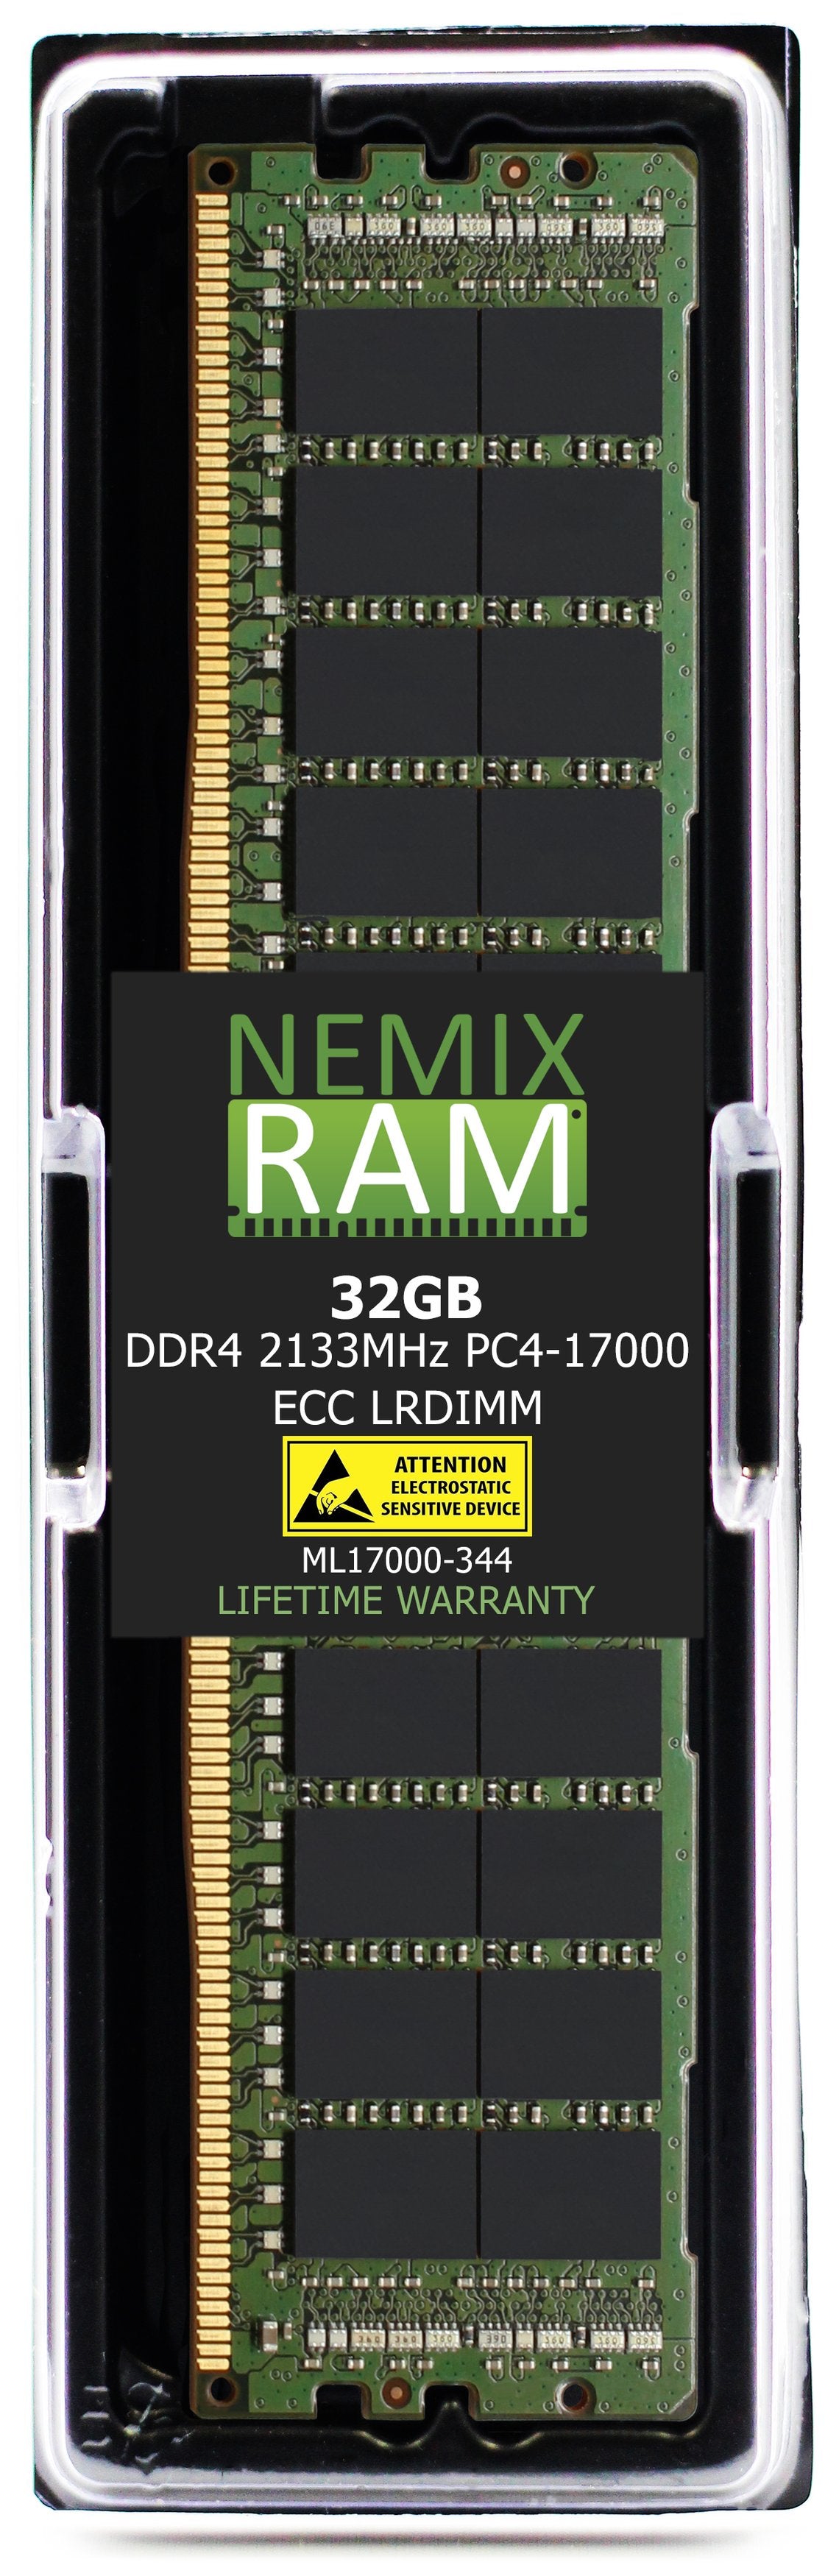 NEC Express5800 T120f Memory Module N8102-647F 32GBDDR4 2133MHZ PC4-17000 LRDIMM